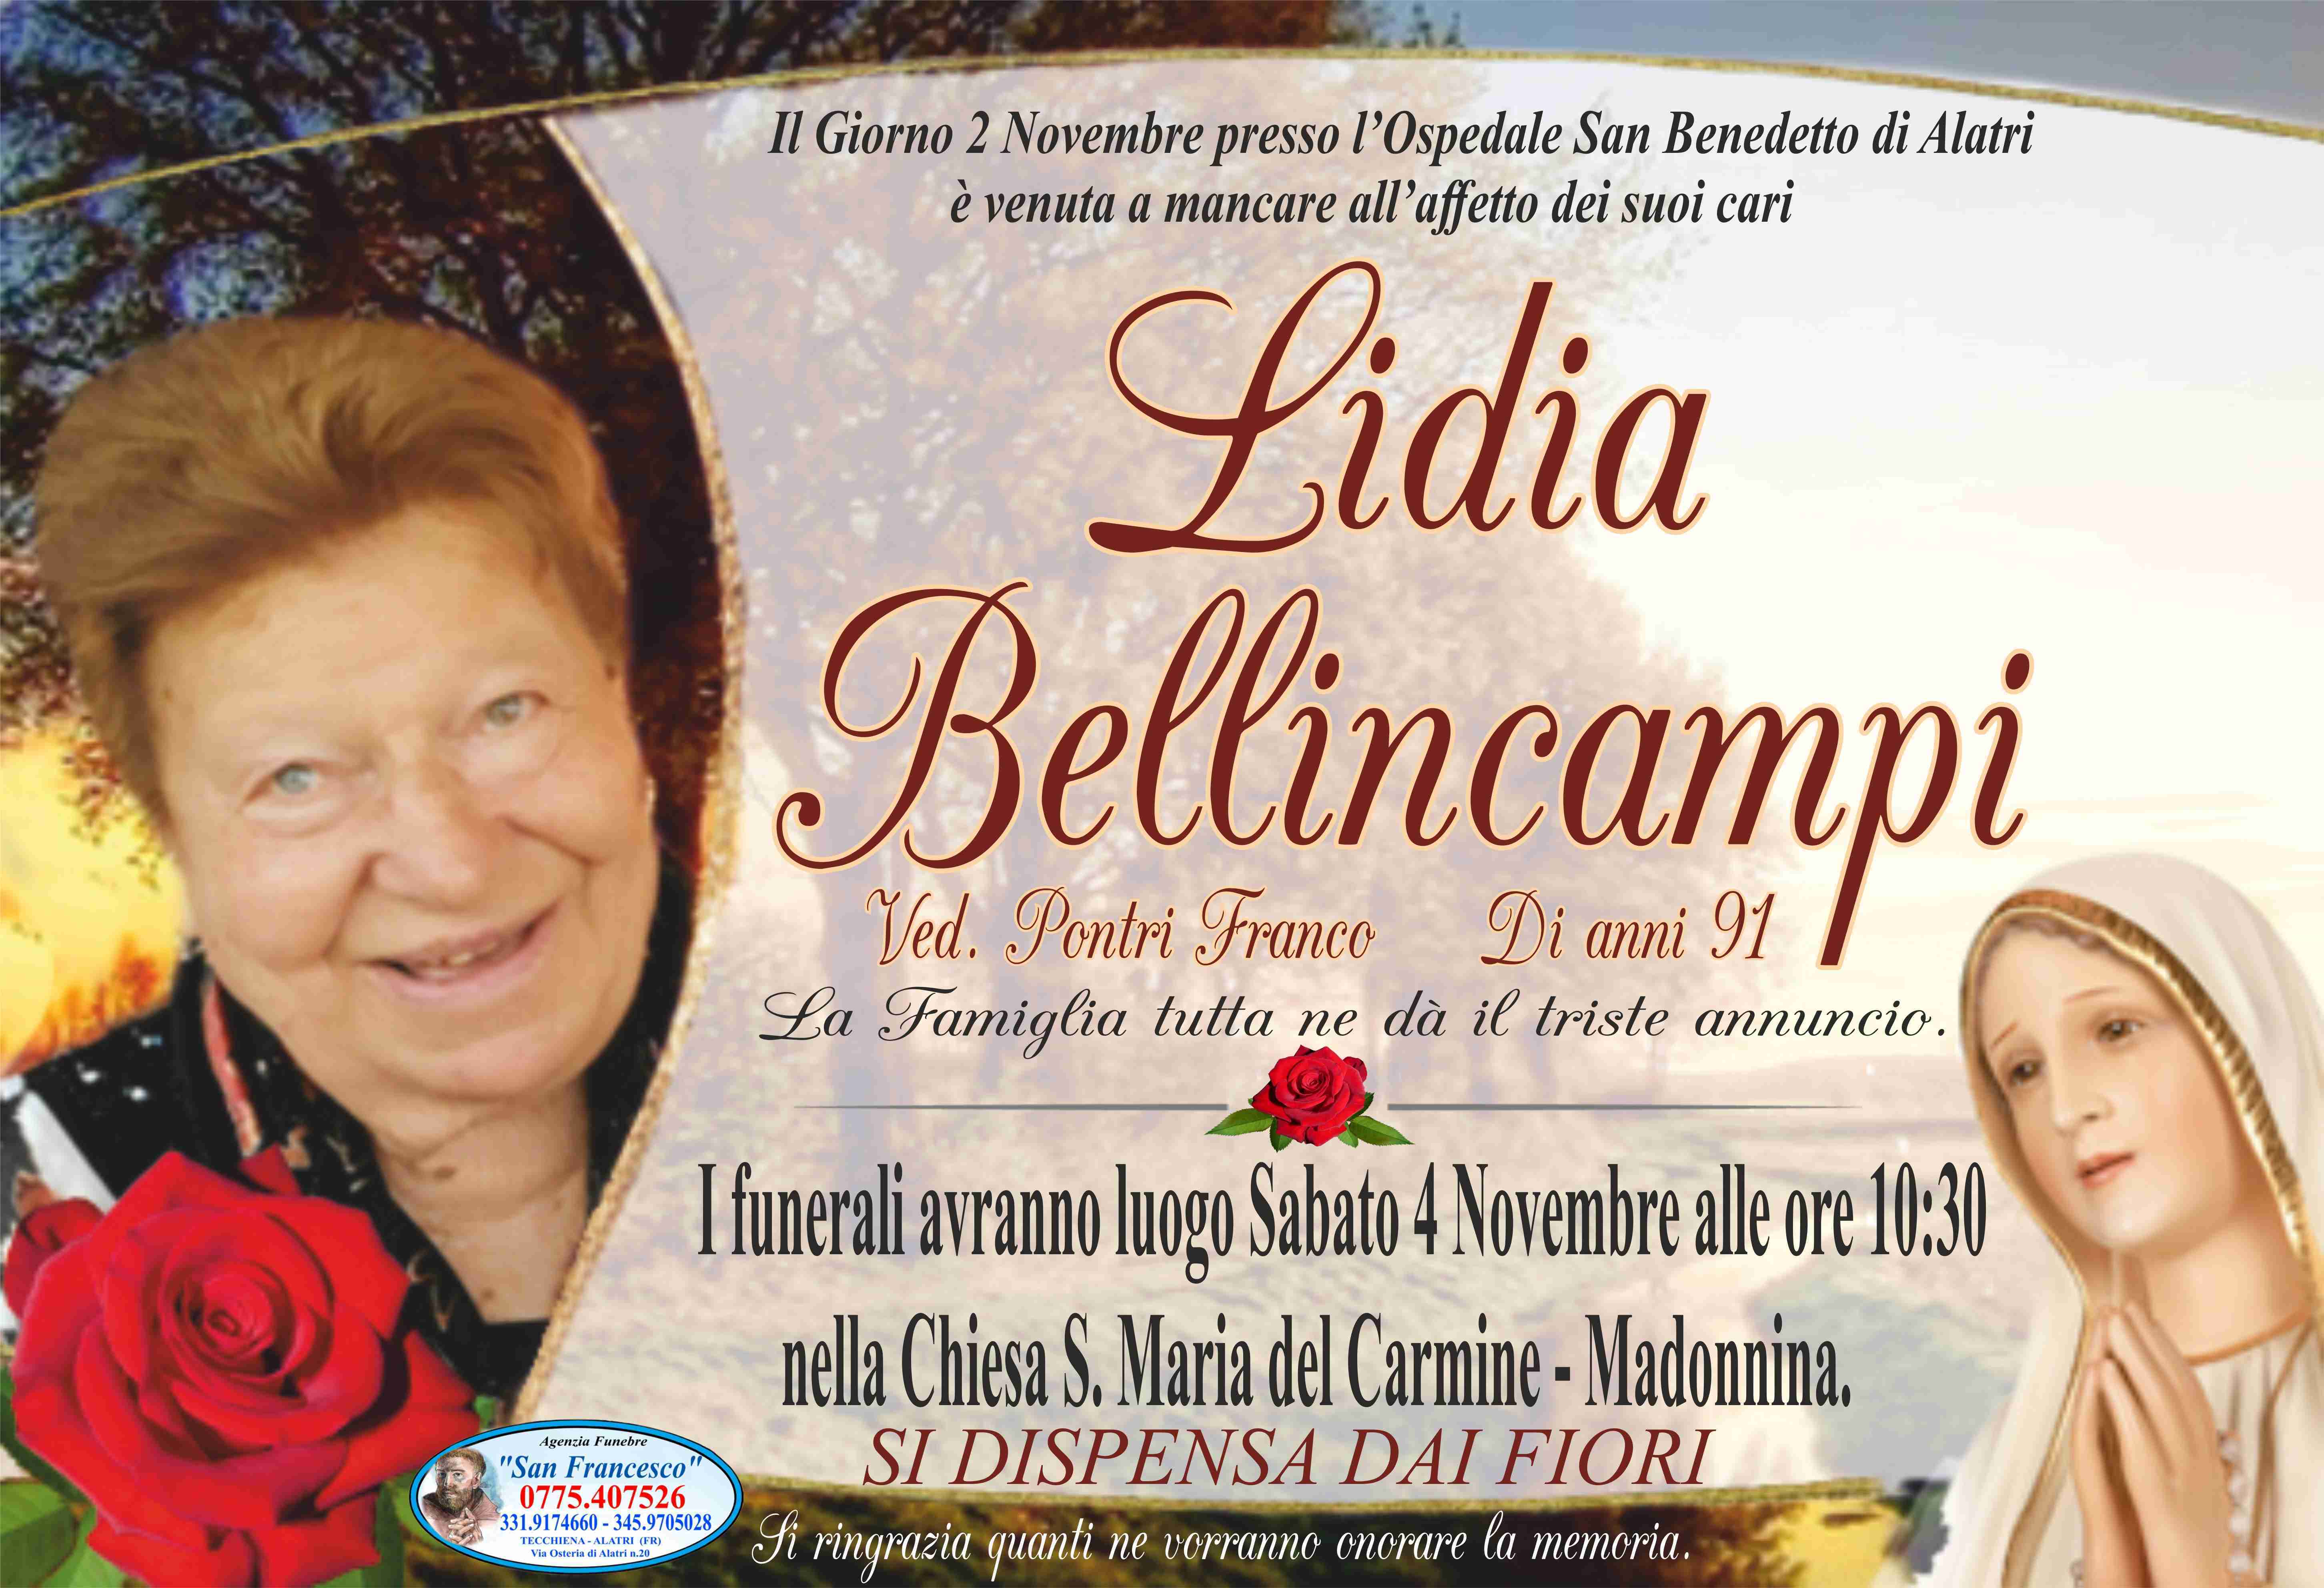 Lidia Bellincampi